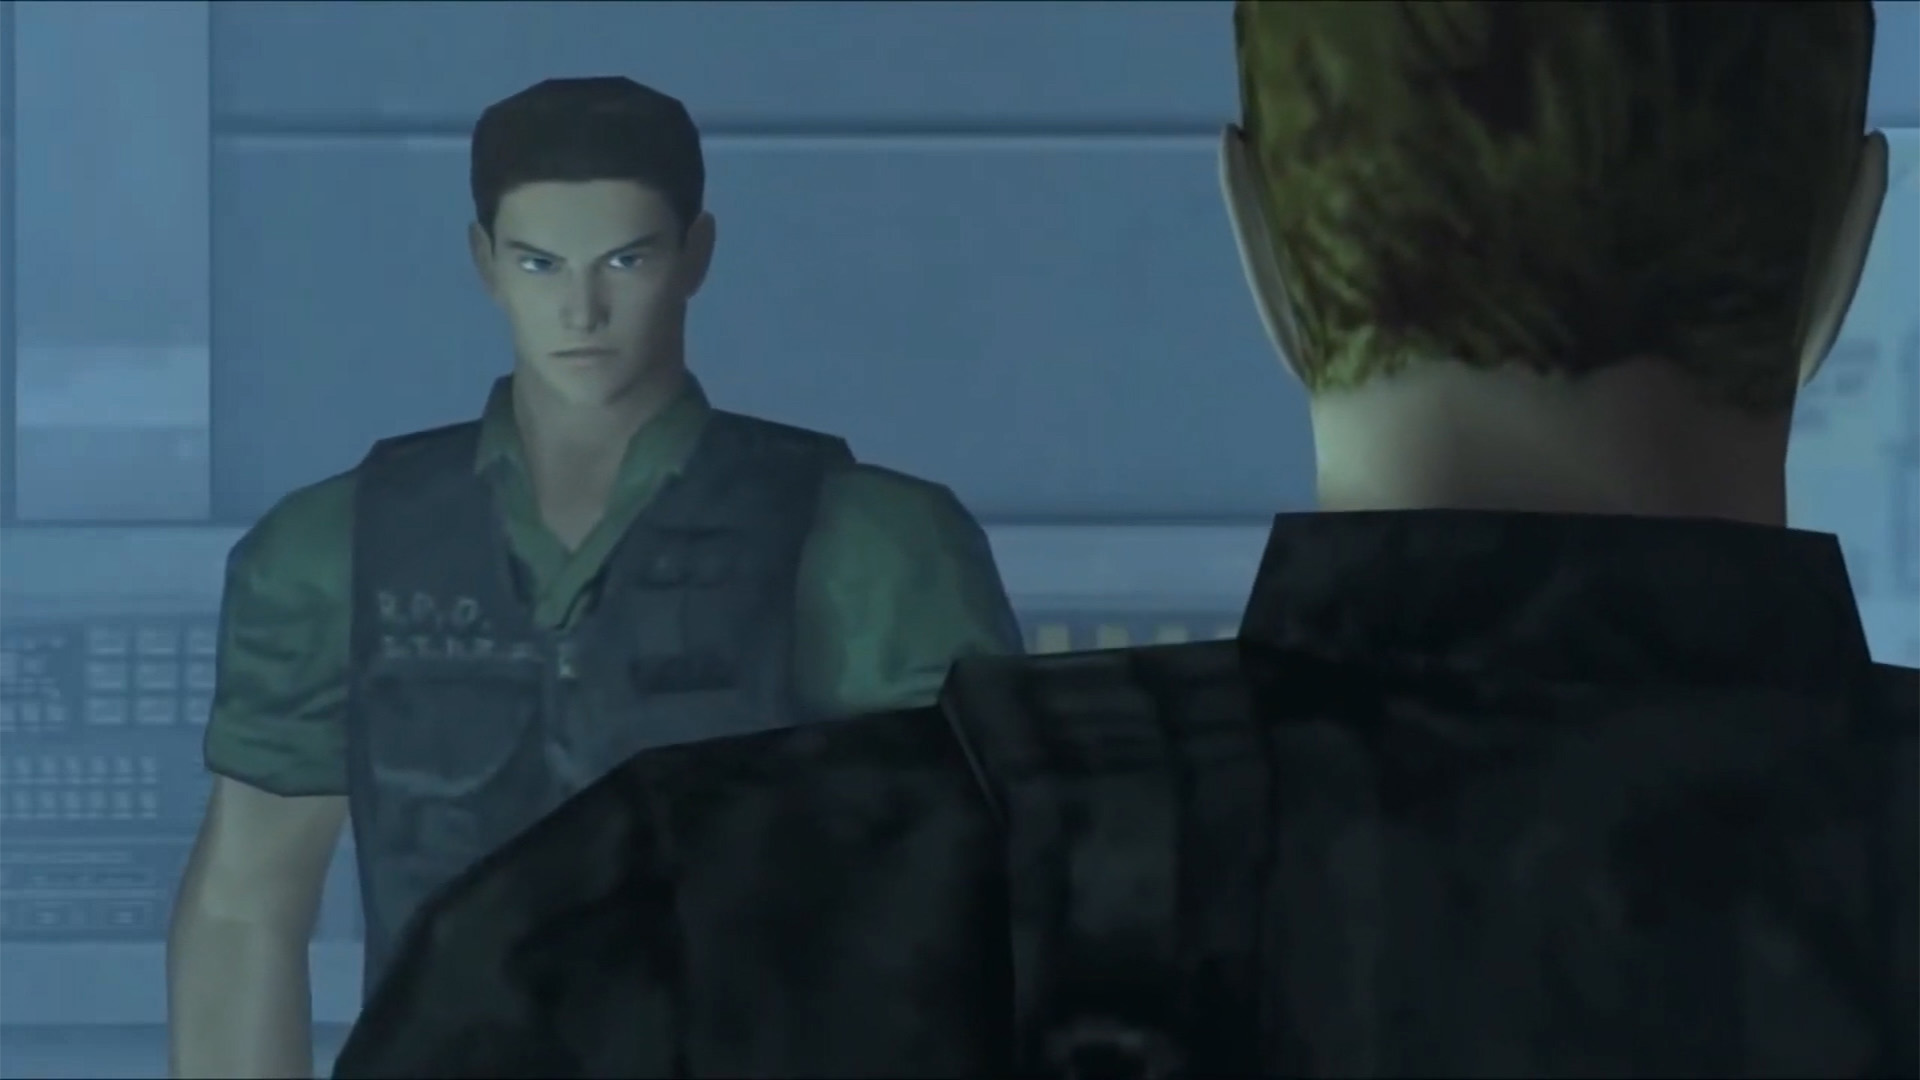 Resident Evil Code Veronica X Game Cube Dublado em PORTUGUÊS 